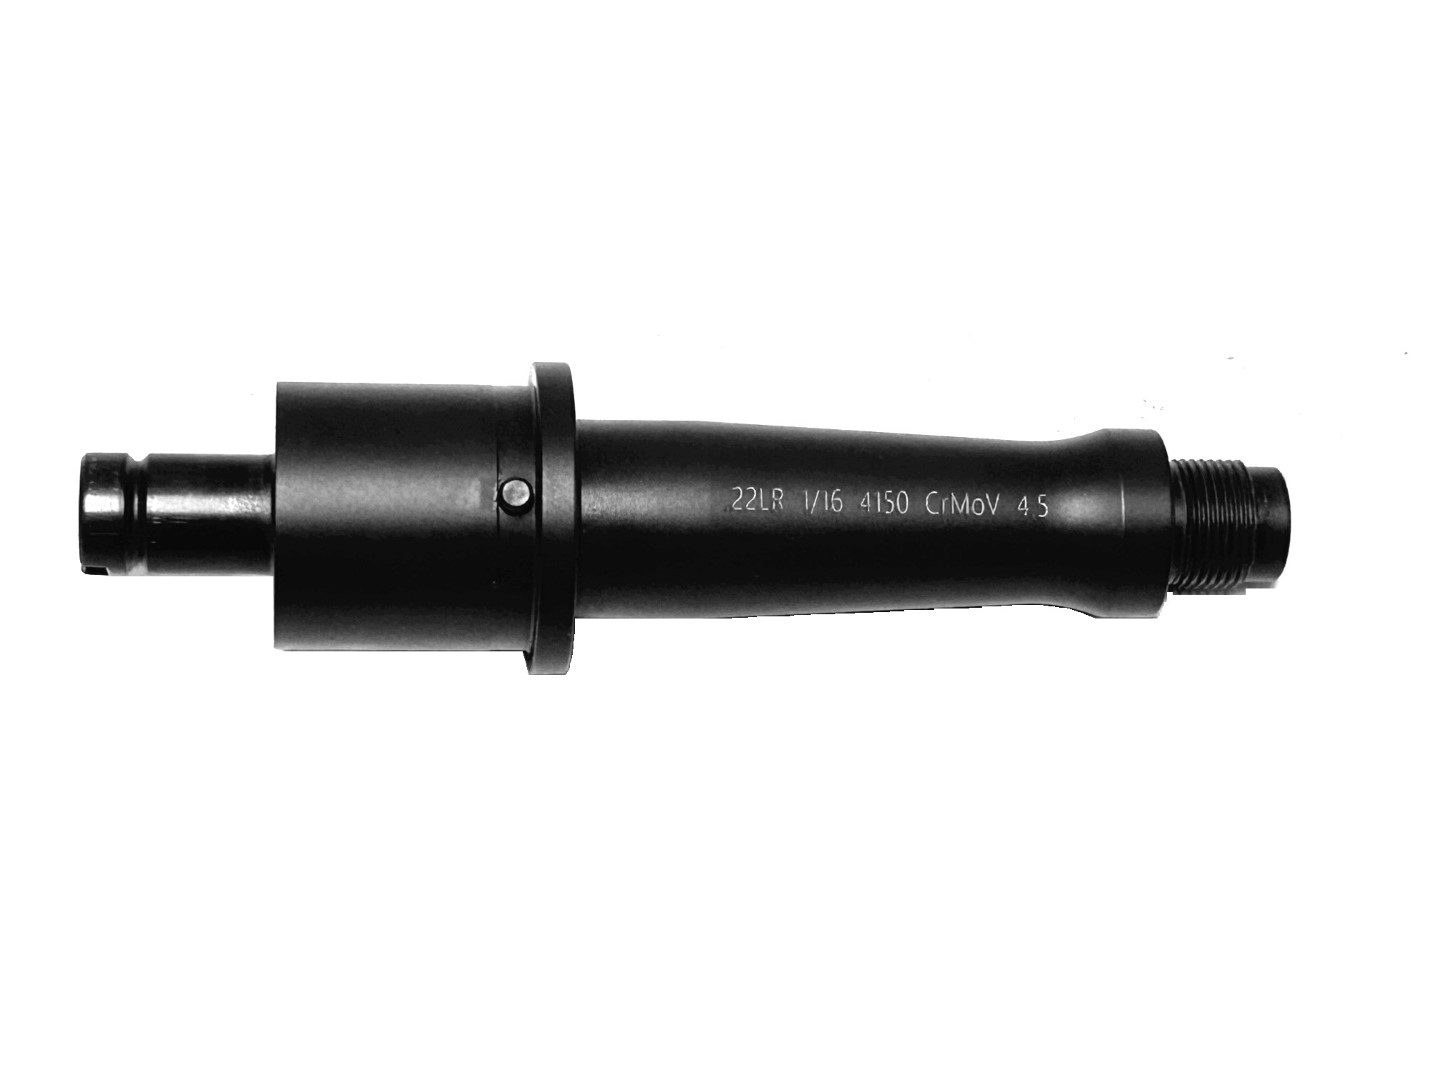 Pro2A 4.5 inch 22LR Nitride AR-15 Barrel